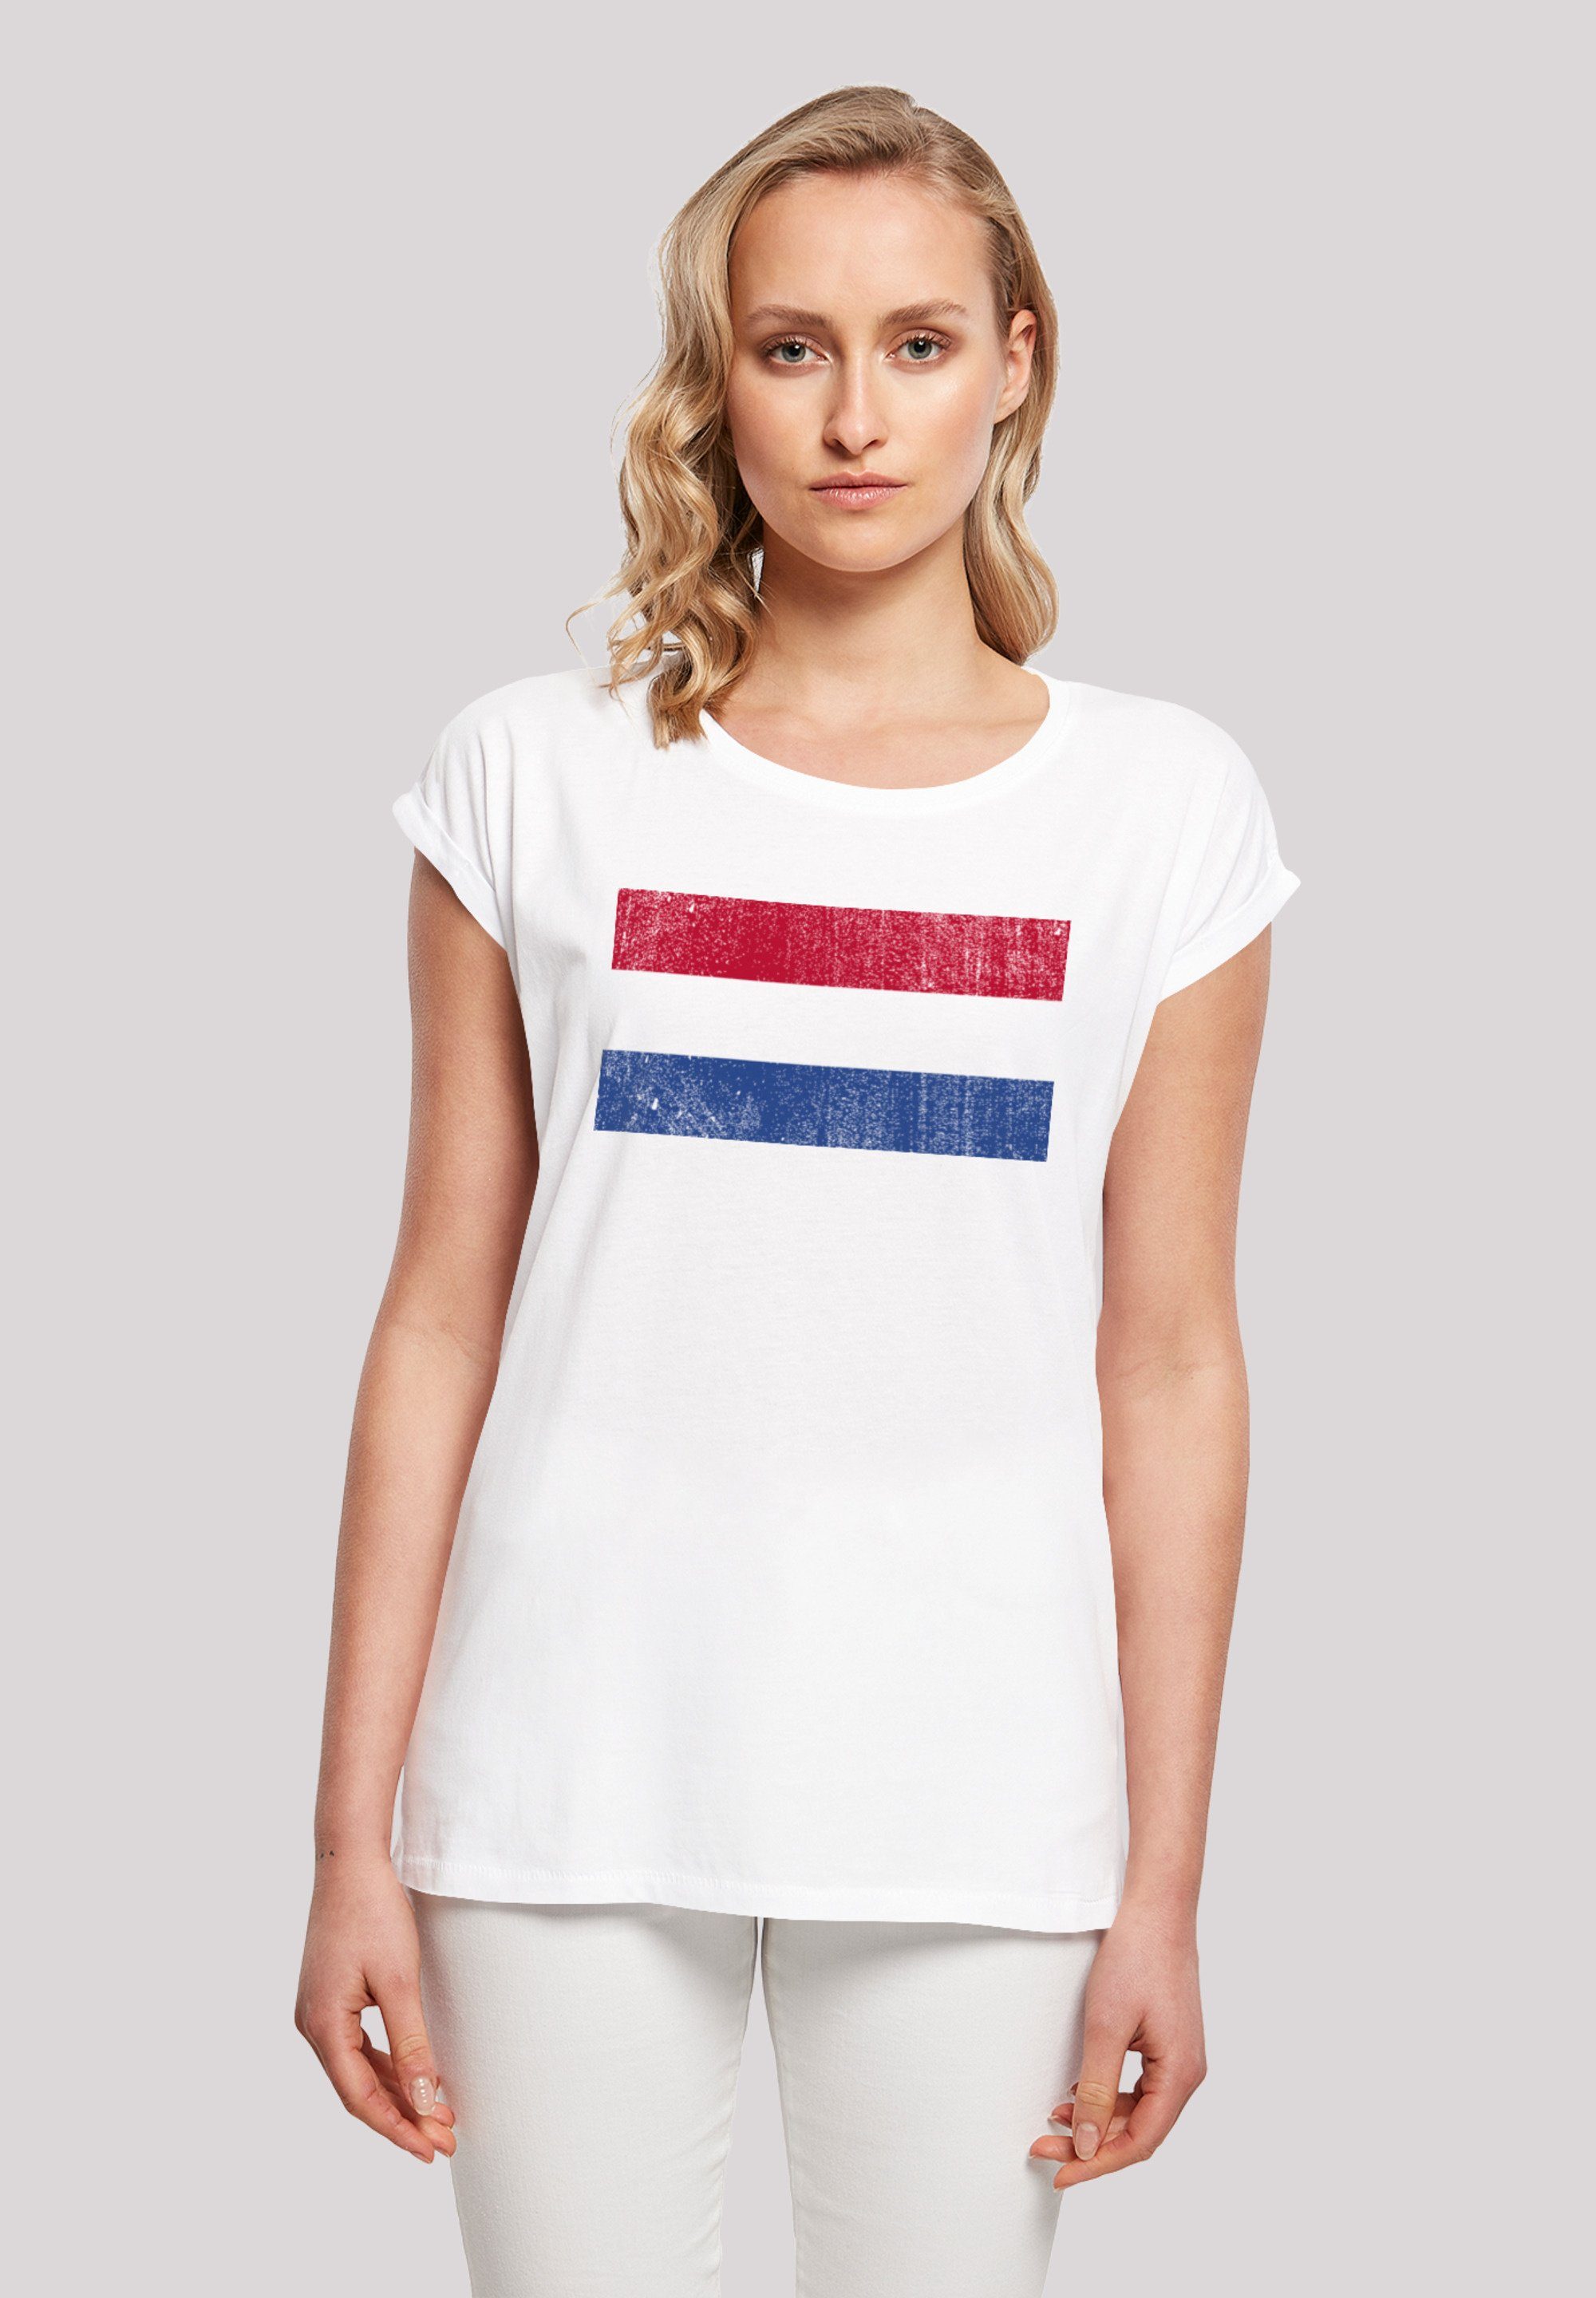 cm Holland F4NT4STIC groß distressed Größe Das Print, NIederlande T-Shirt 170 und trägt Netherlands Flagge M Model ist